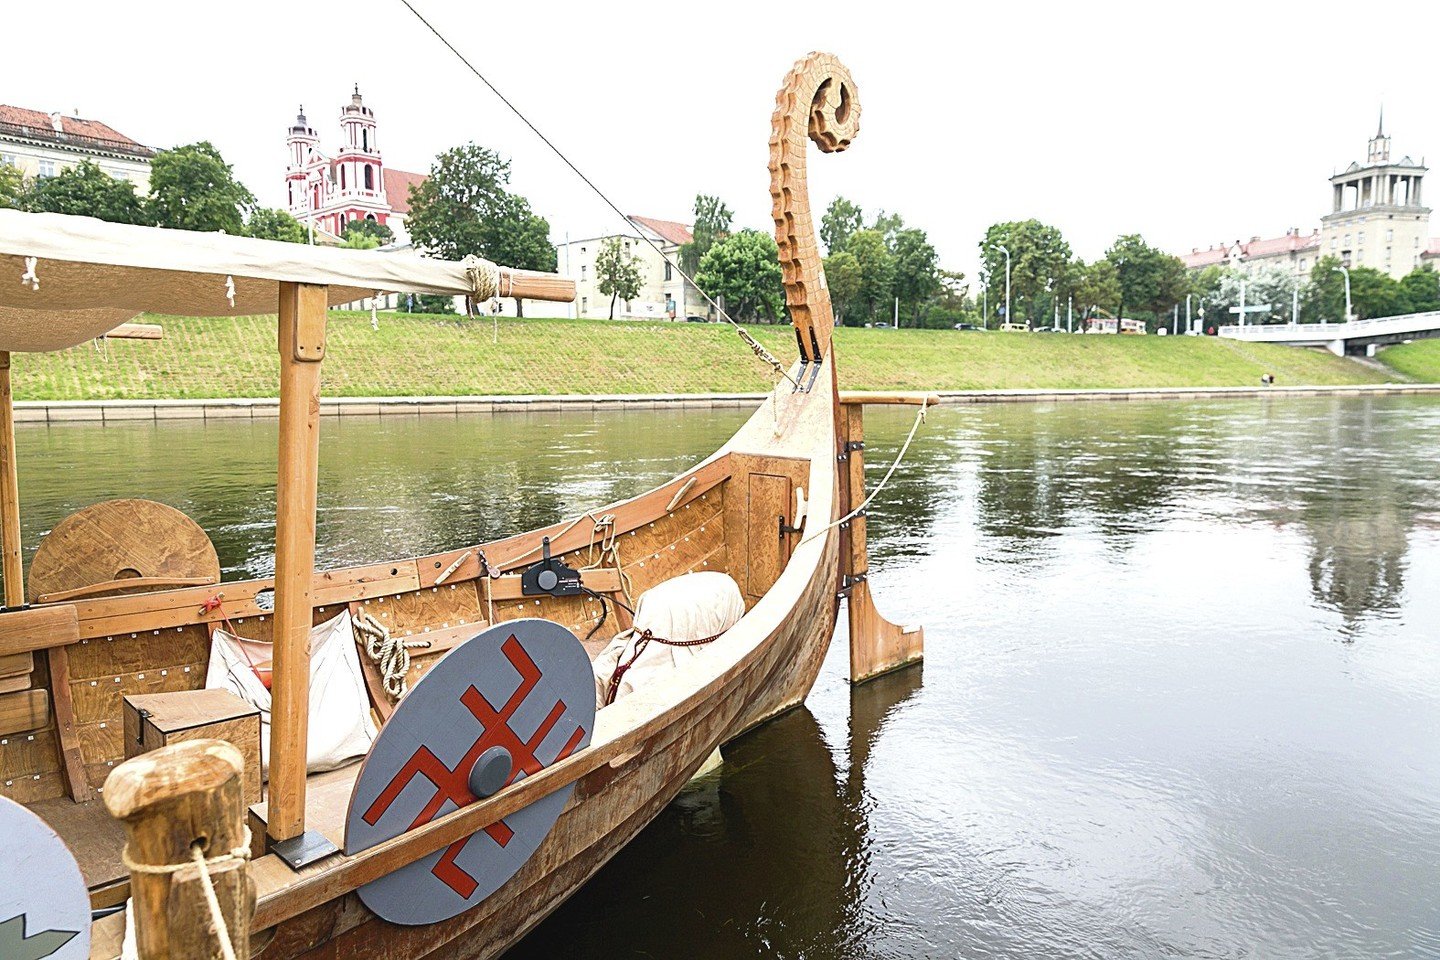 Šią vasarą Neries upe Vilniuje plaukiojo pramoginis vikingų laivas, kurį klientas vokietis užsakė pagaminti Suvalkijoje.<br>Nuotr. iš asmeninio archyvo ir T.Bauro, L.Juodzevičienės nuotr.